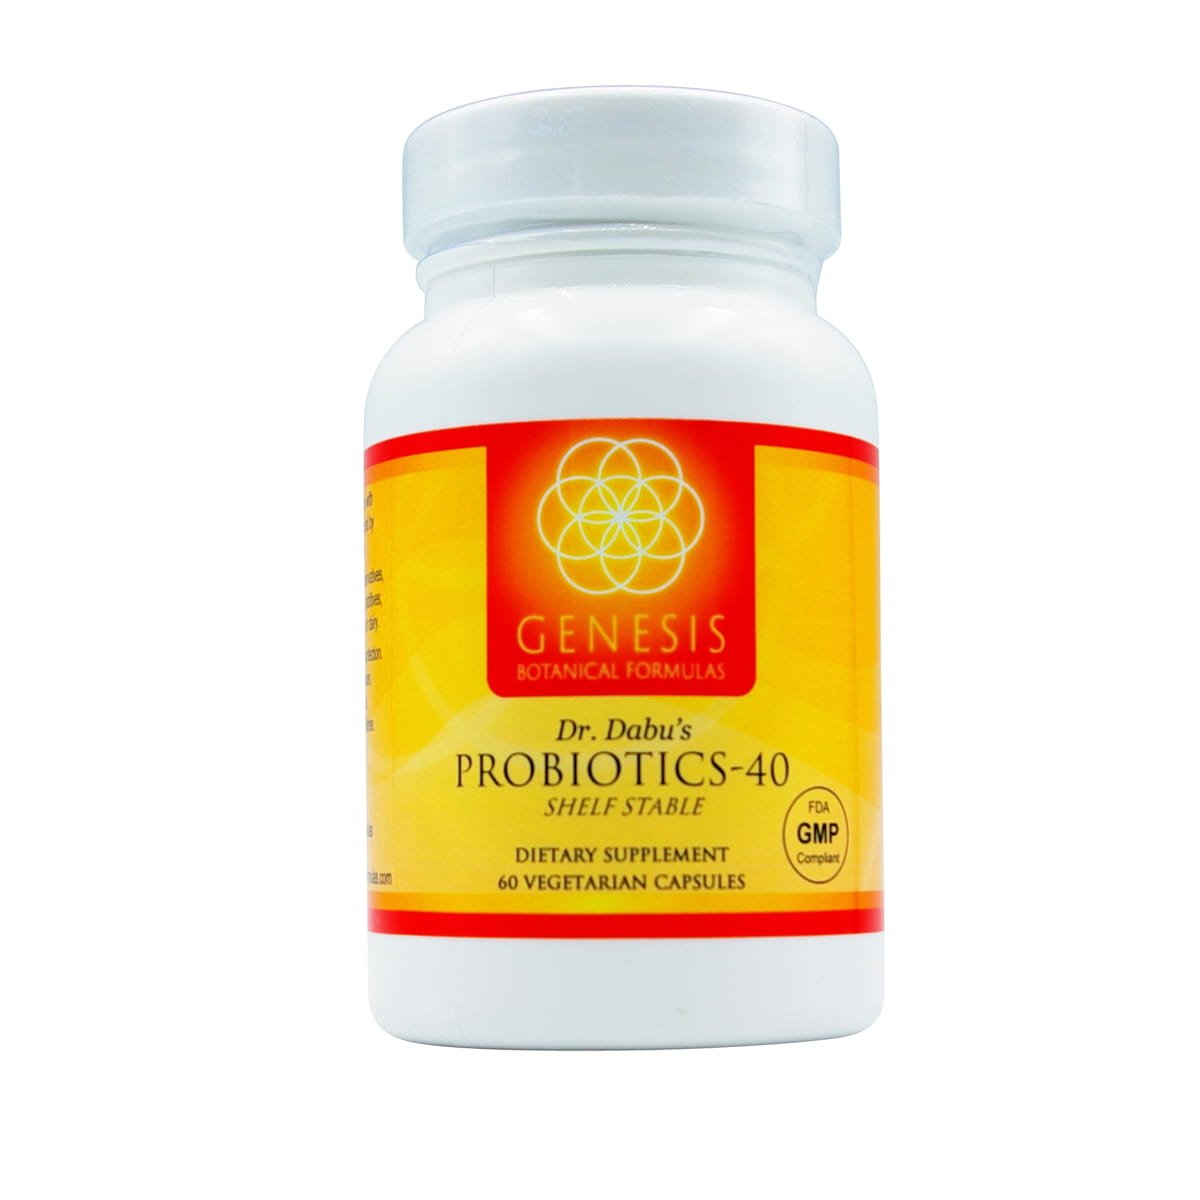 Probiotics-40